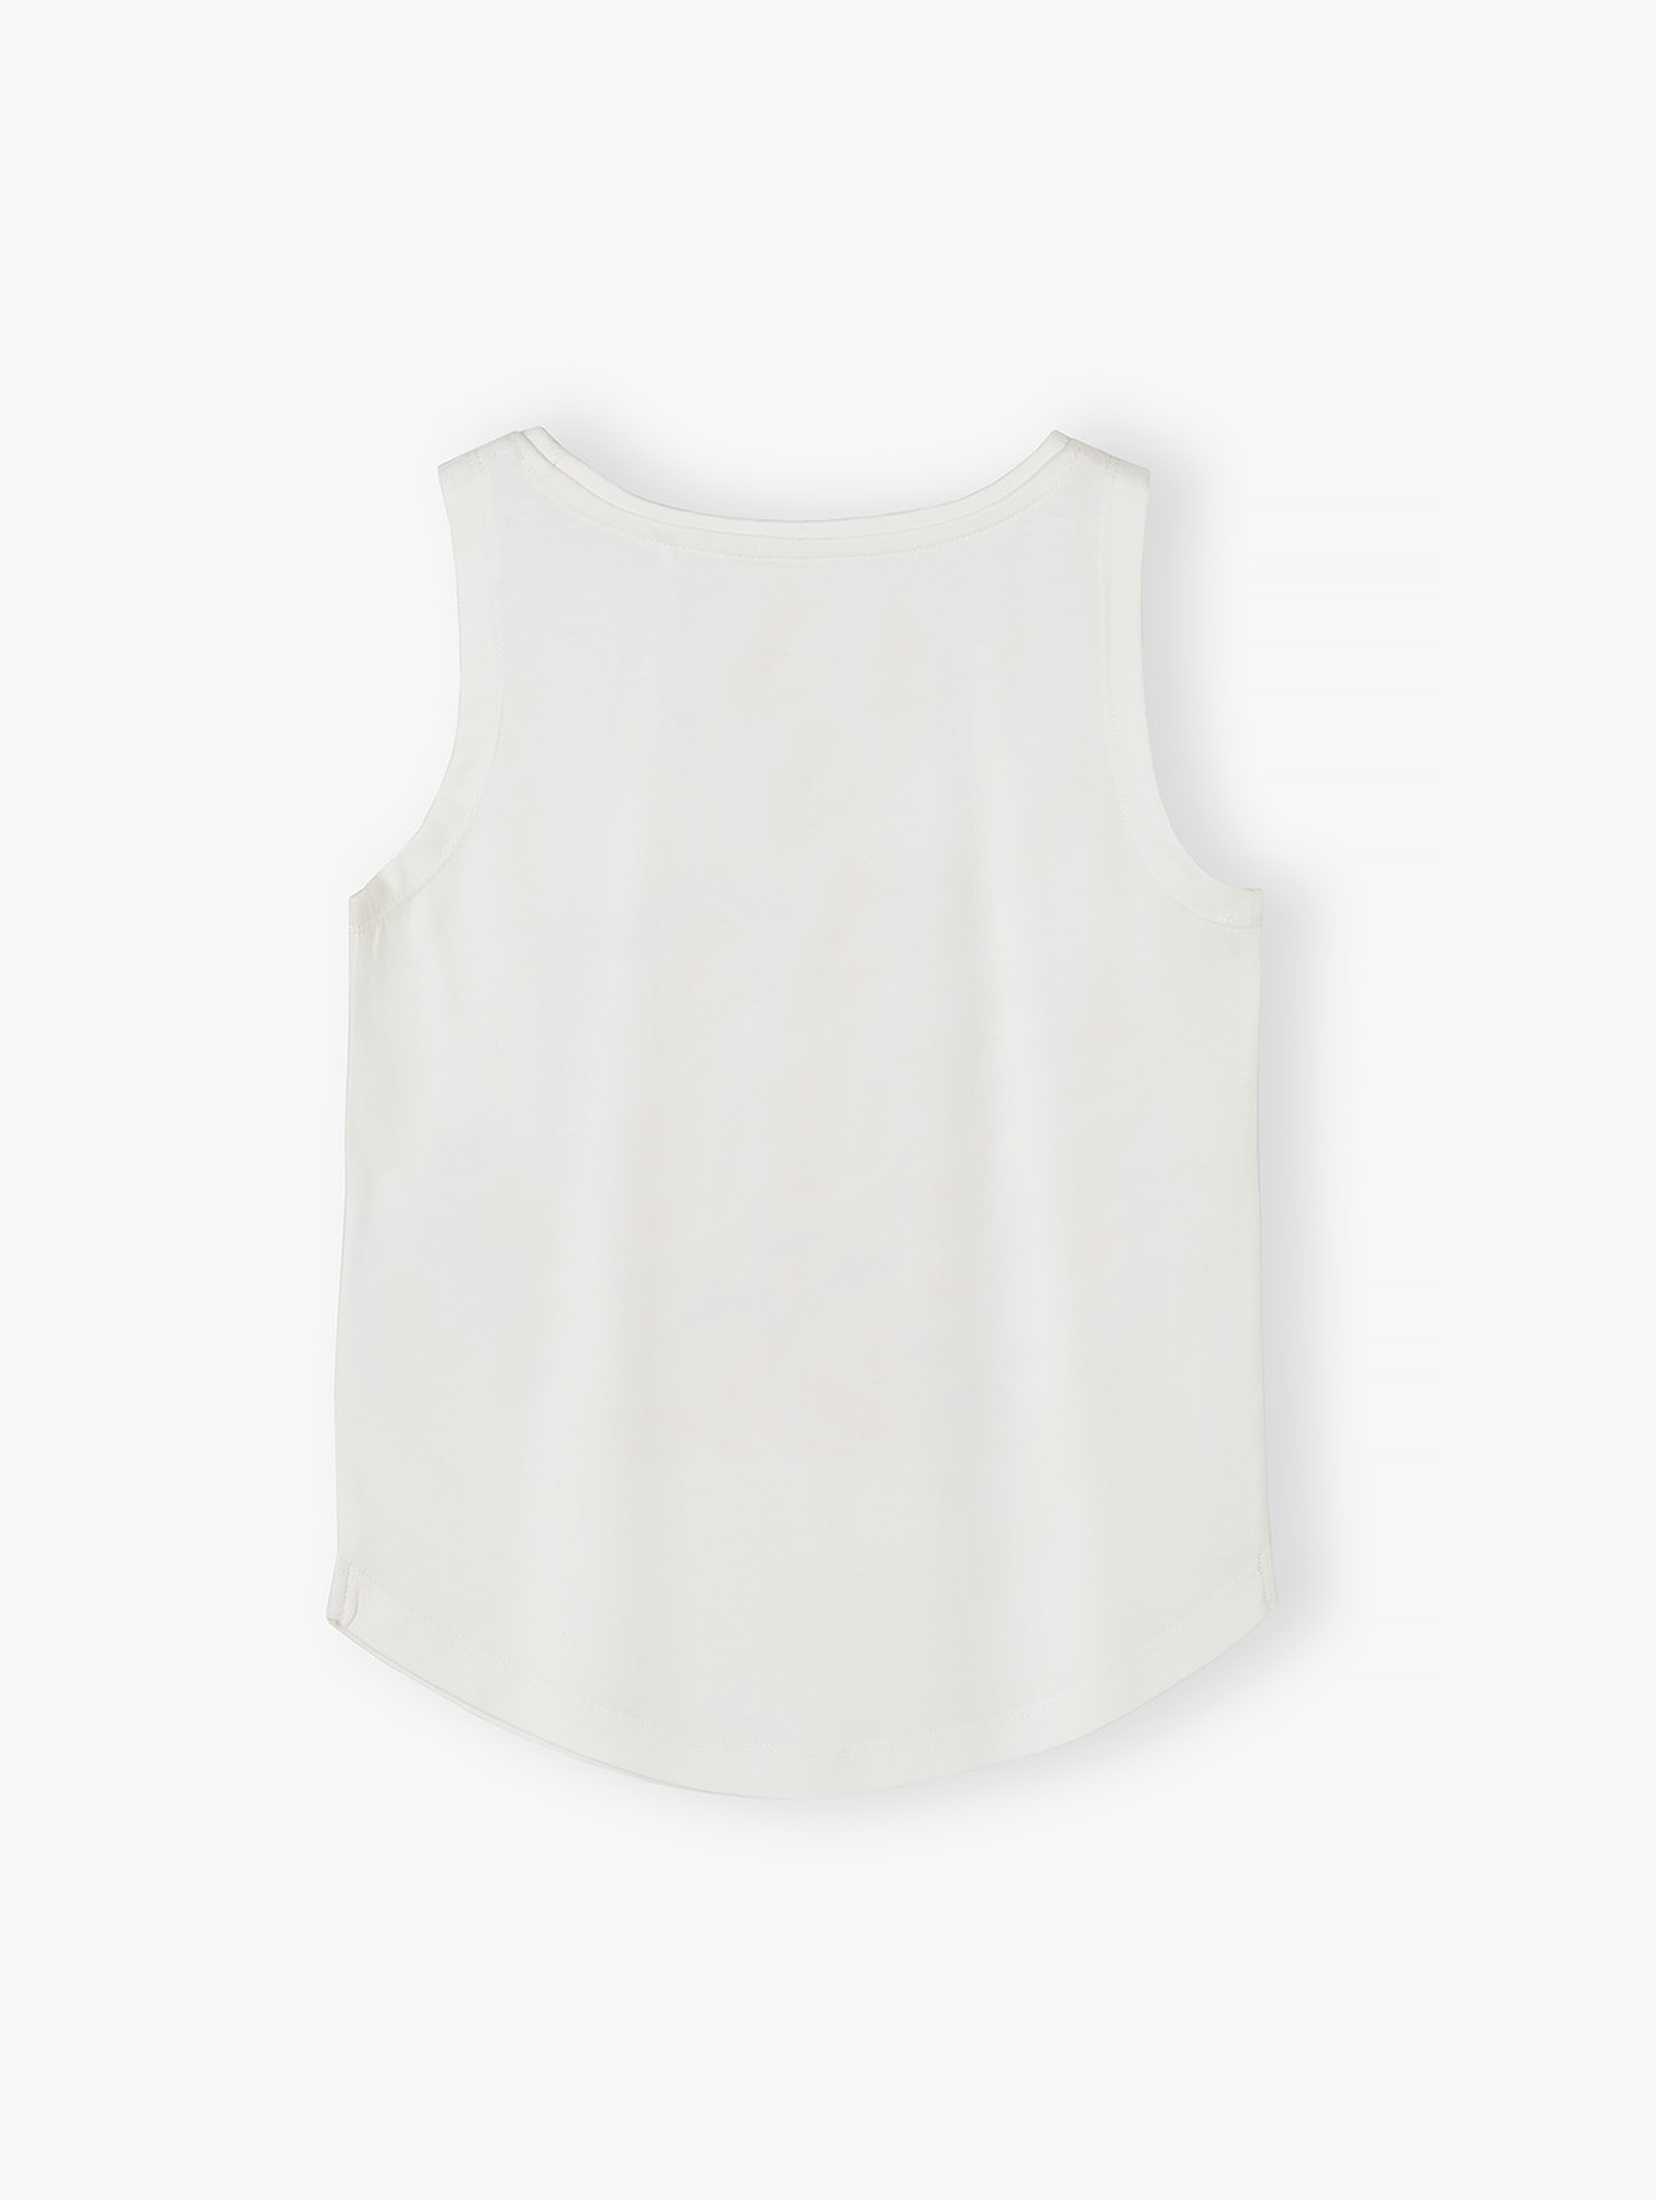 Biały t-shirt bawełniany dla dziewczynki bez rękawów